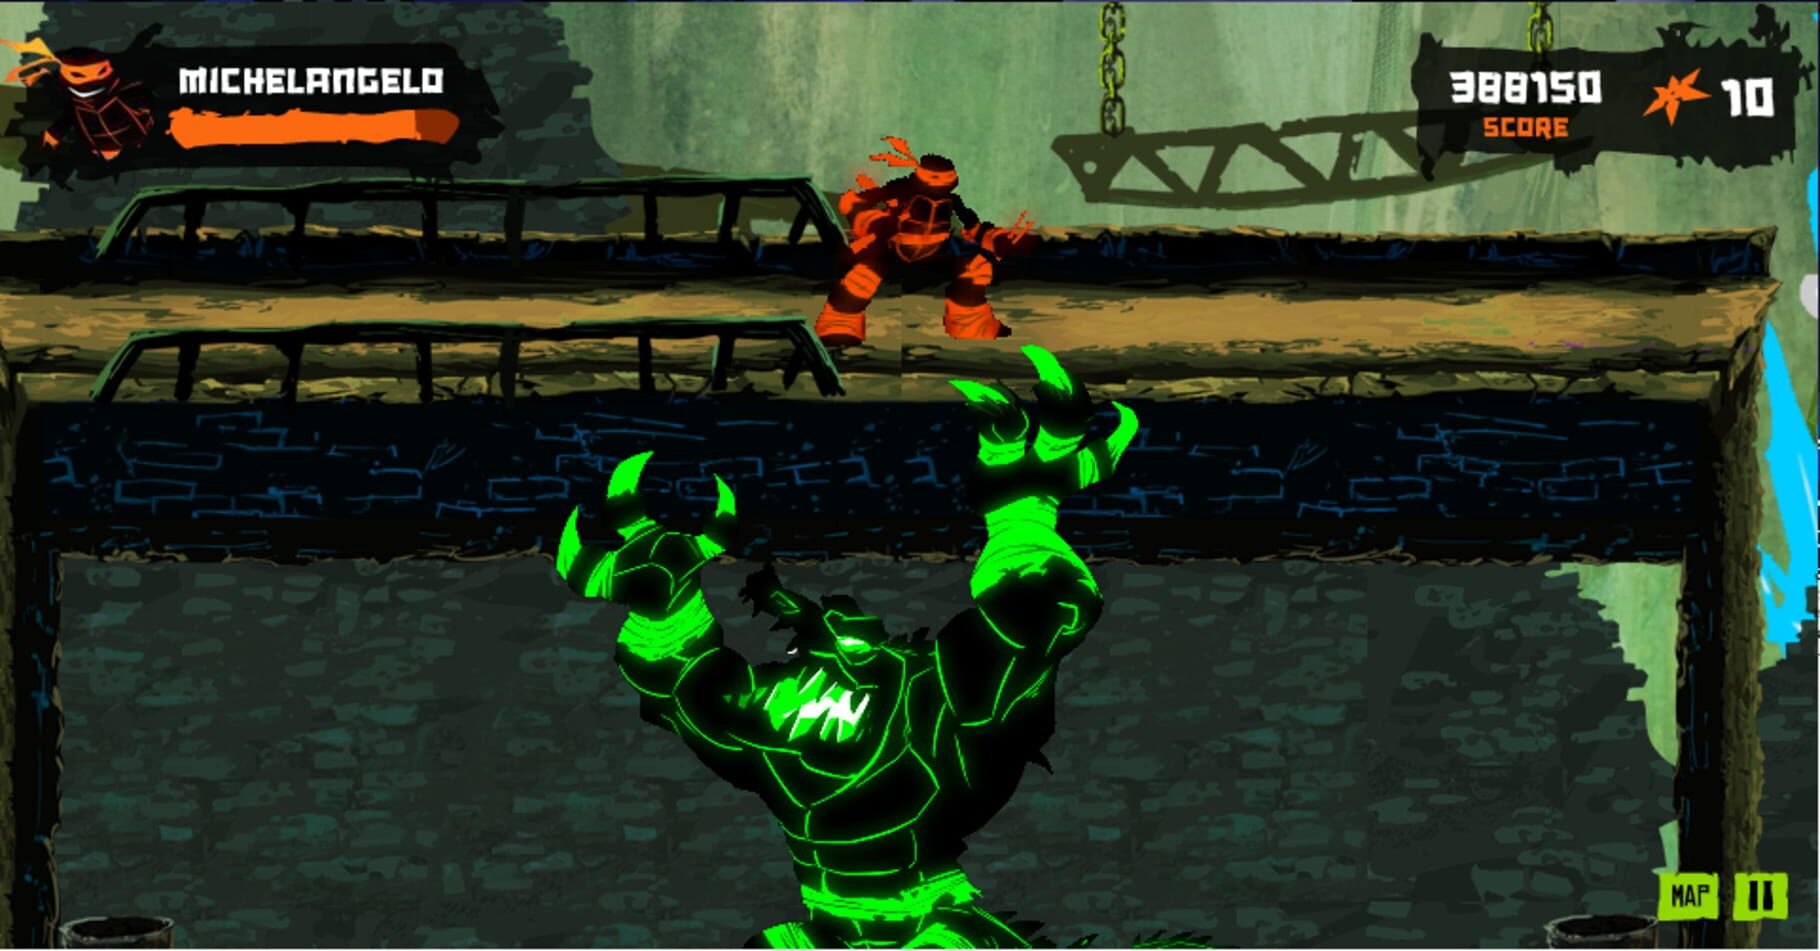 Teenage Mutant Ninja Turtles: Dark Horizons Image